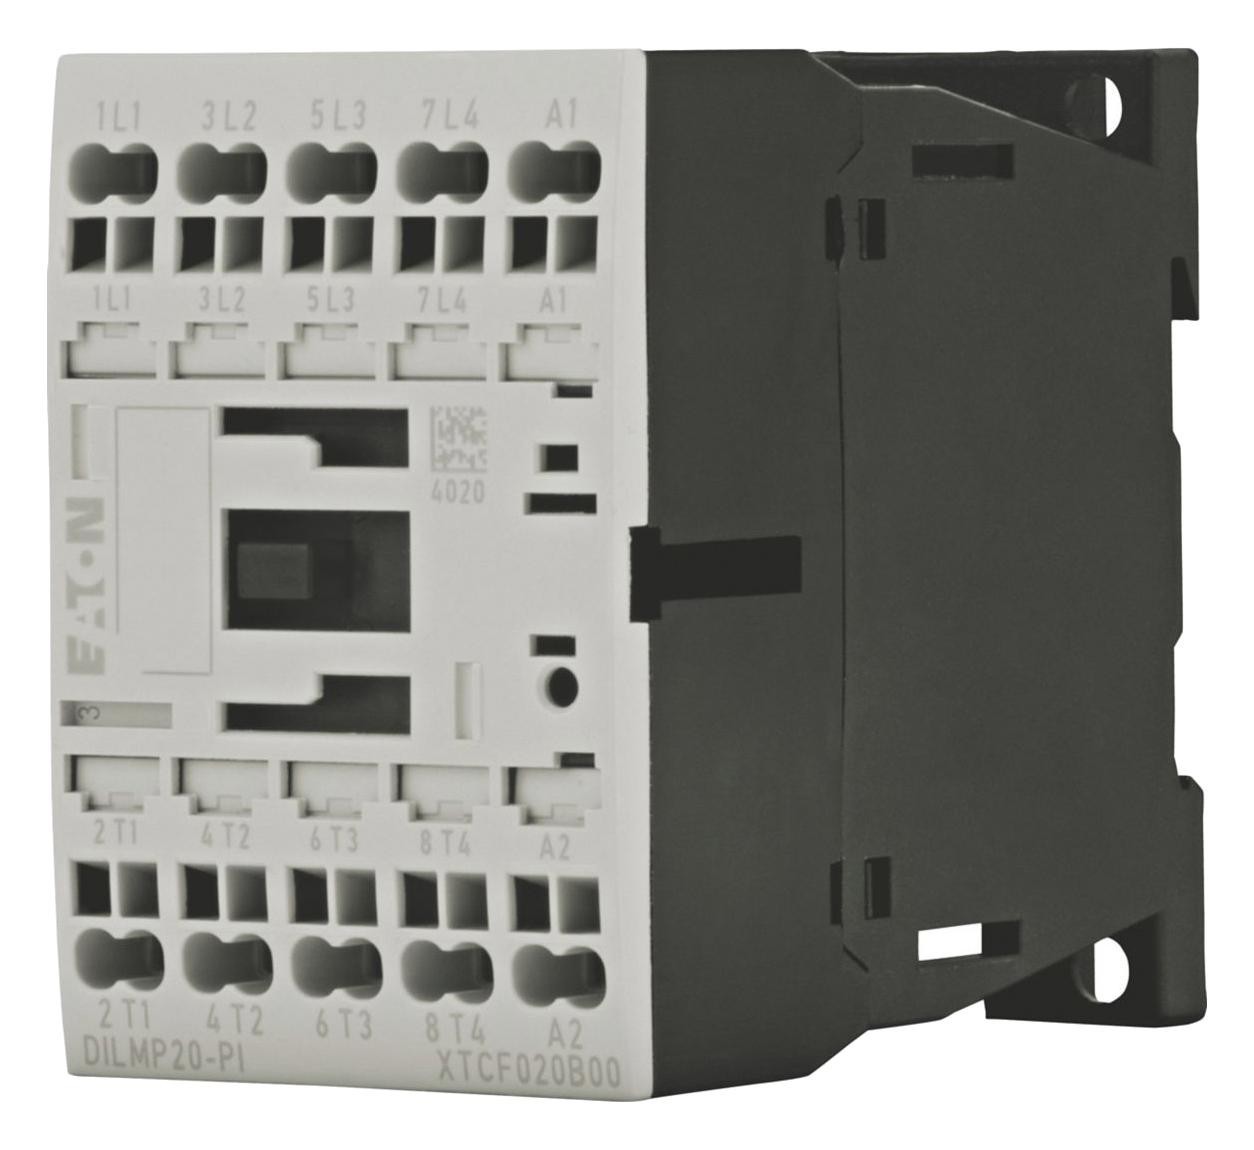 Eaton Moeller Dilmp20(230V50/60Hz)-Pi Contactor, 4Pst-No, 230Vac, Din/panel